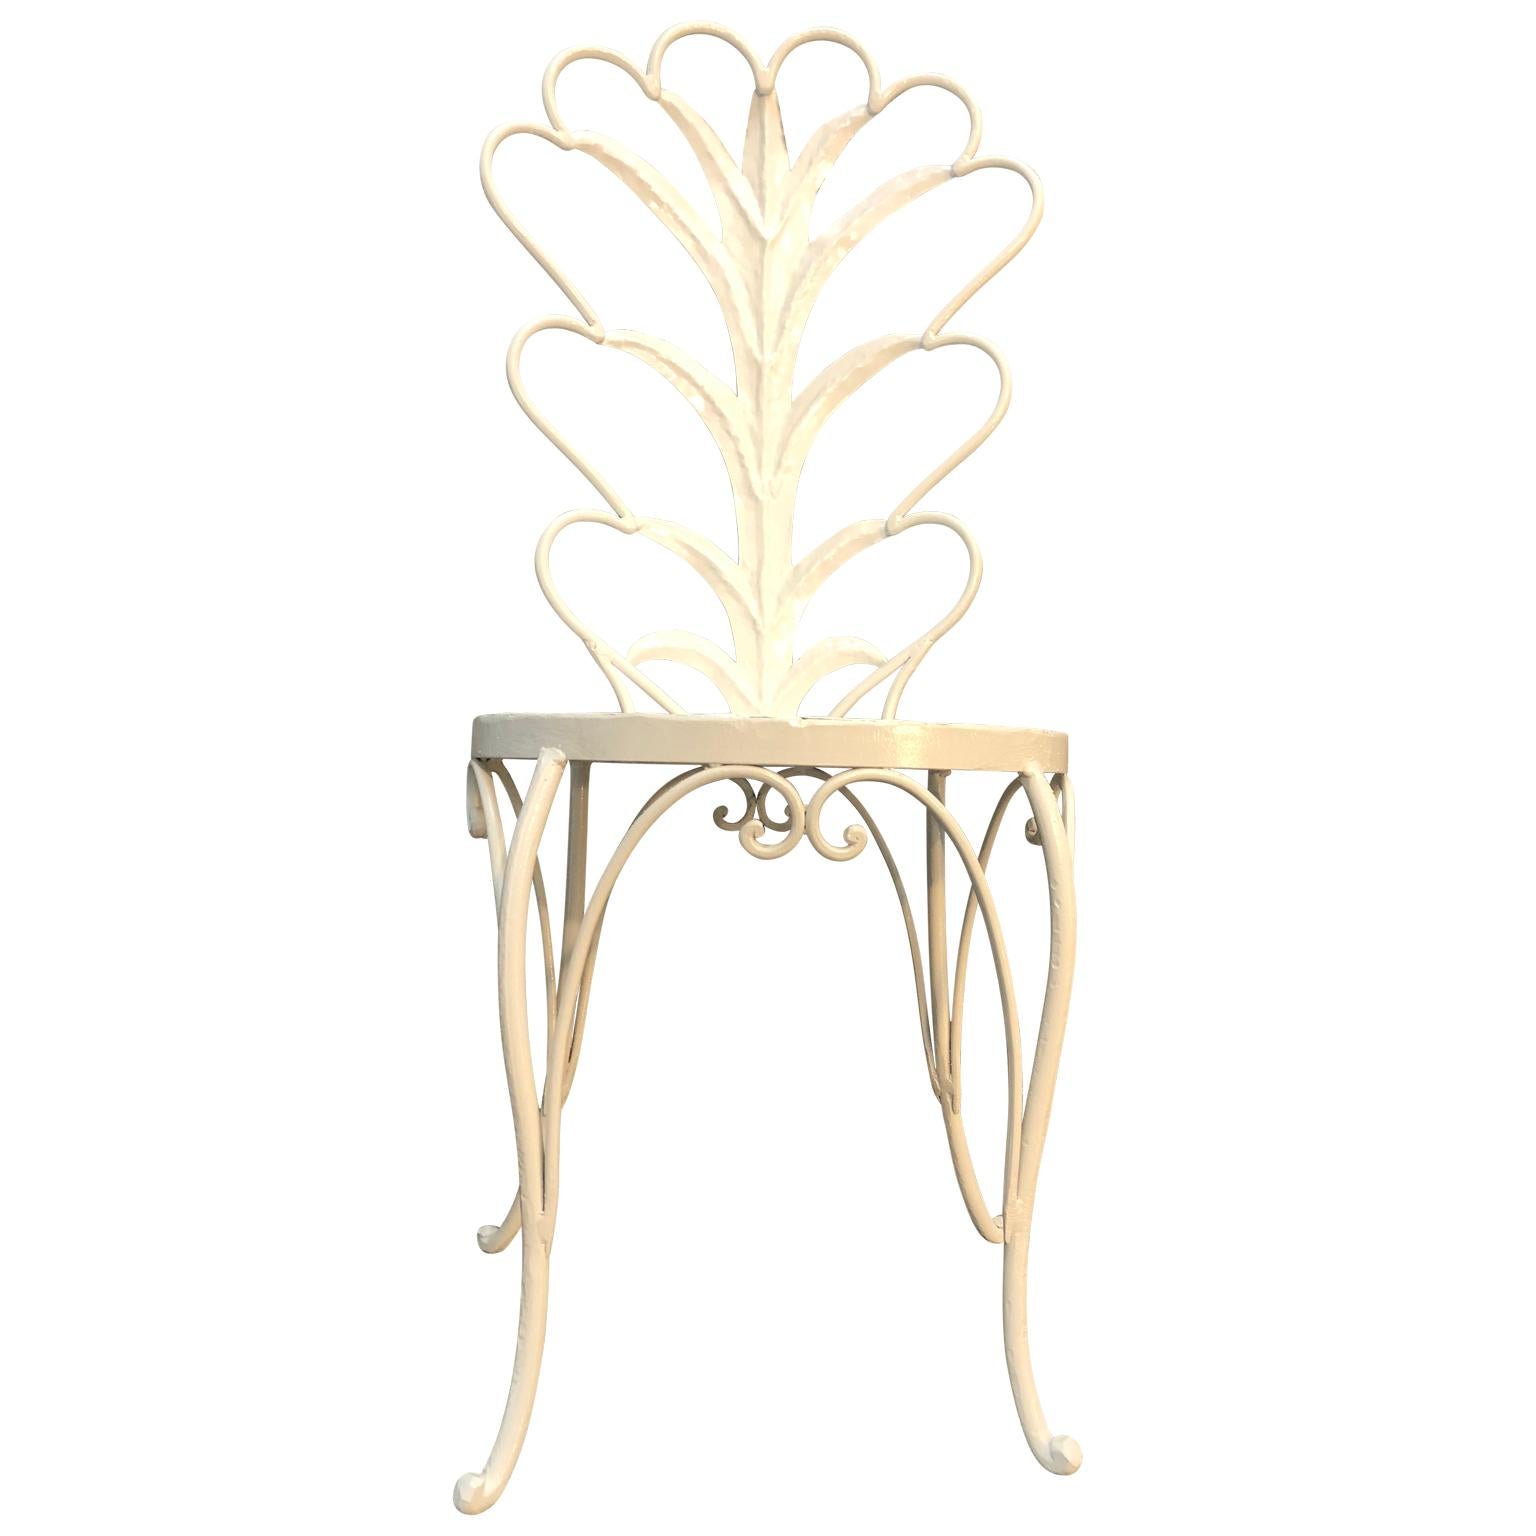 Weißer Metall-Visierstuhl mit Palmenblättern 

Der Stuhl im Hollywood-Regency-Stil ist neu pulverbeschichtet und in einem schlichten Weiß gehalten. Der Stuhl war ursprünglich vergoldet.
Kissen sind möglicherweise nicht enthalten und/oder nicht